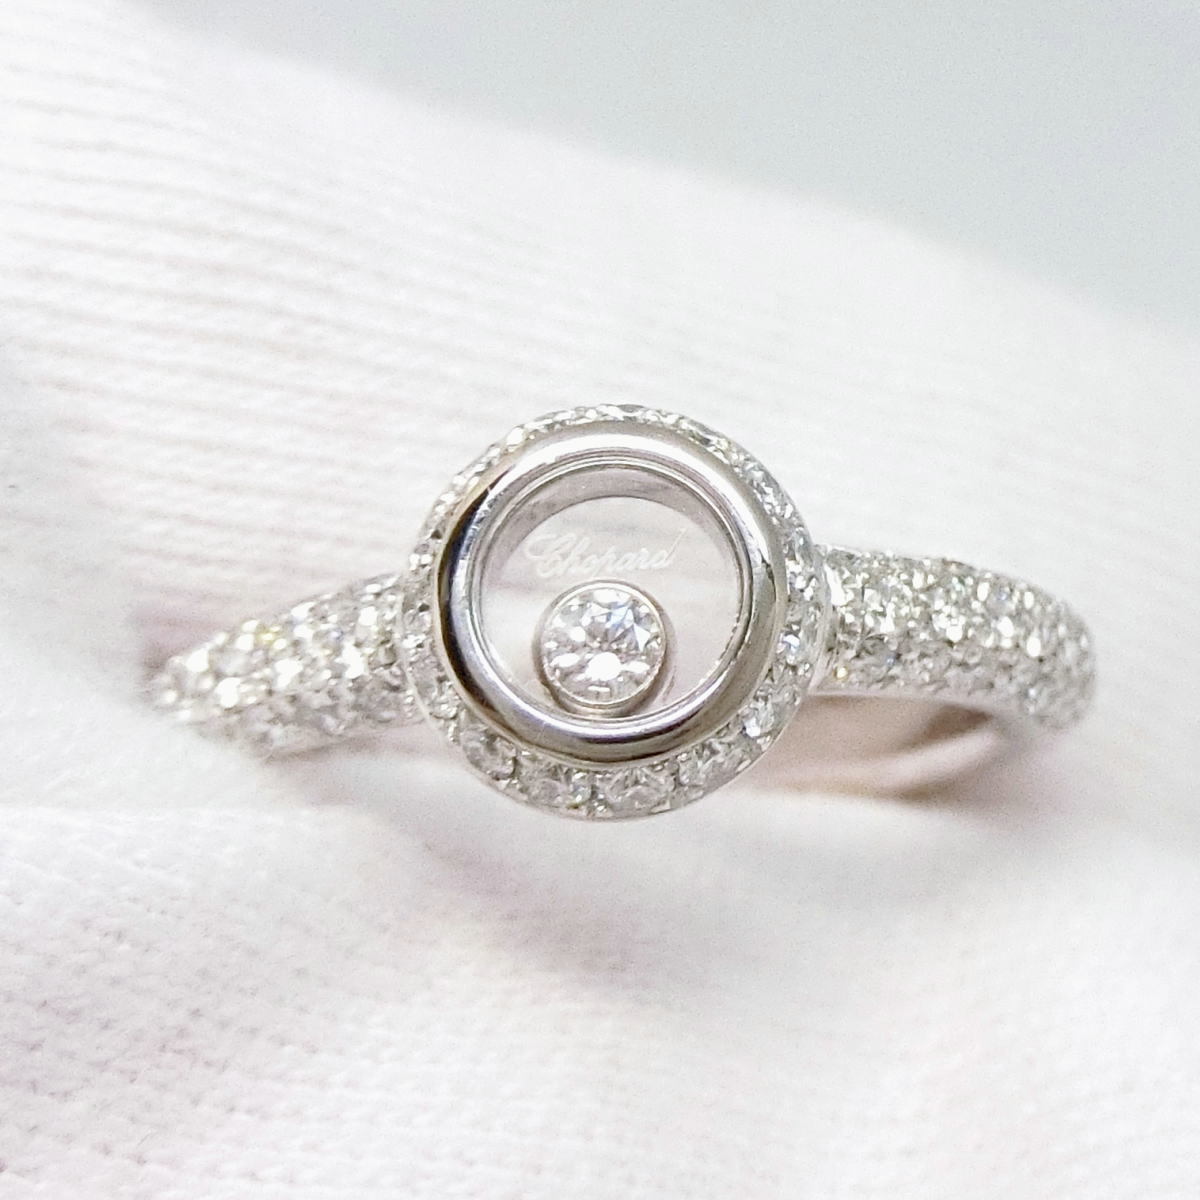 [ бесплатная доставка ] Chopard Chopard 750WG happy бриллиант 1P diamond / раунд кольцо с бриллиантом 9 номер 82/2902-20* с гарантией * прекрасный товар 